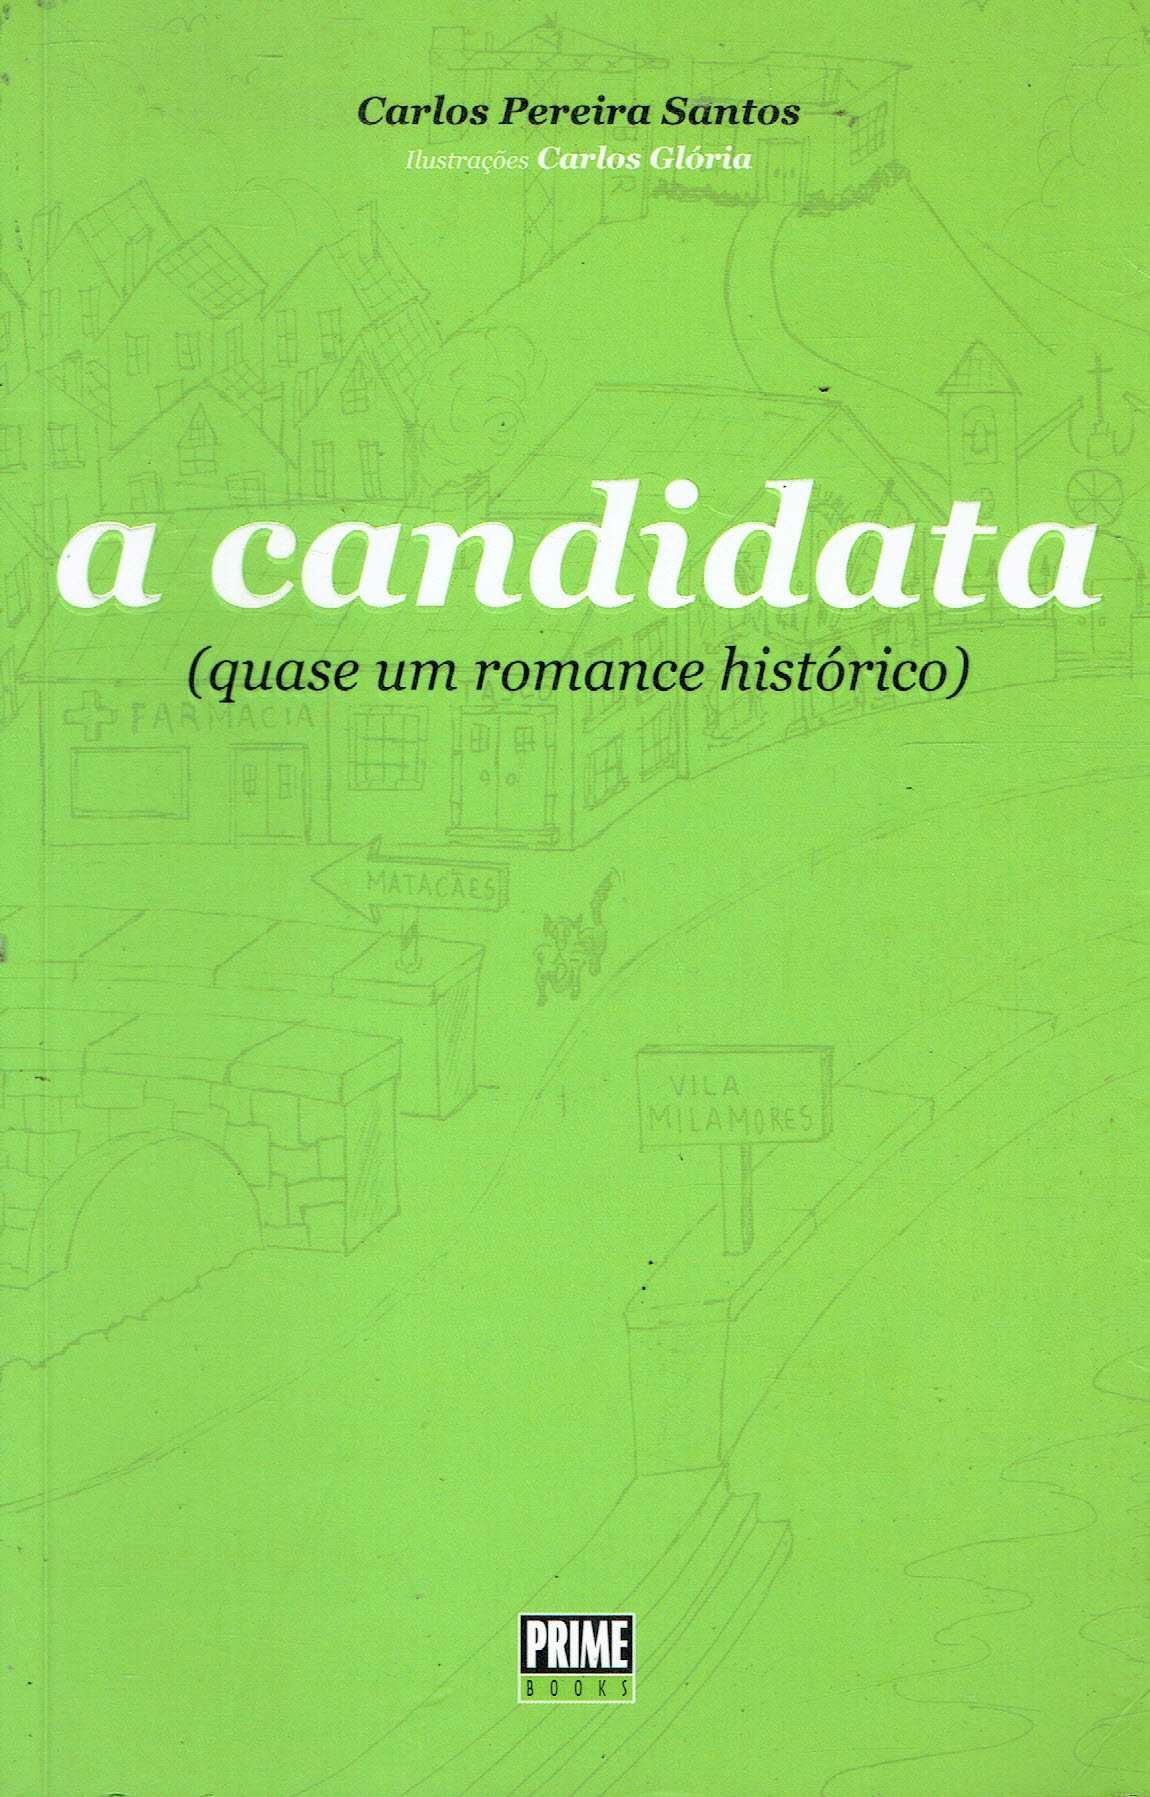 14549

A Candidata
de Carlos Pereira Santos